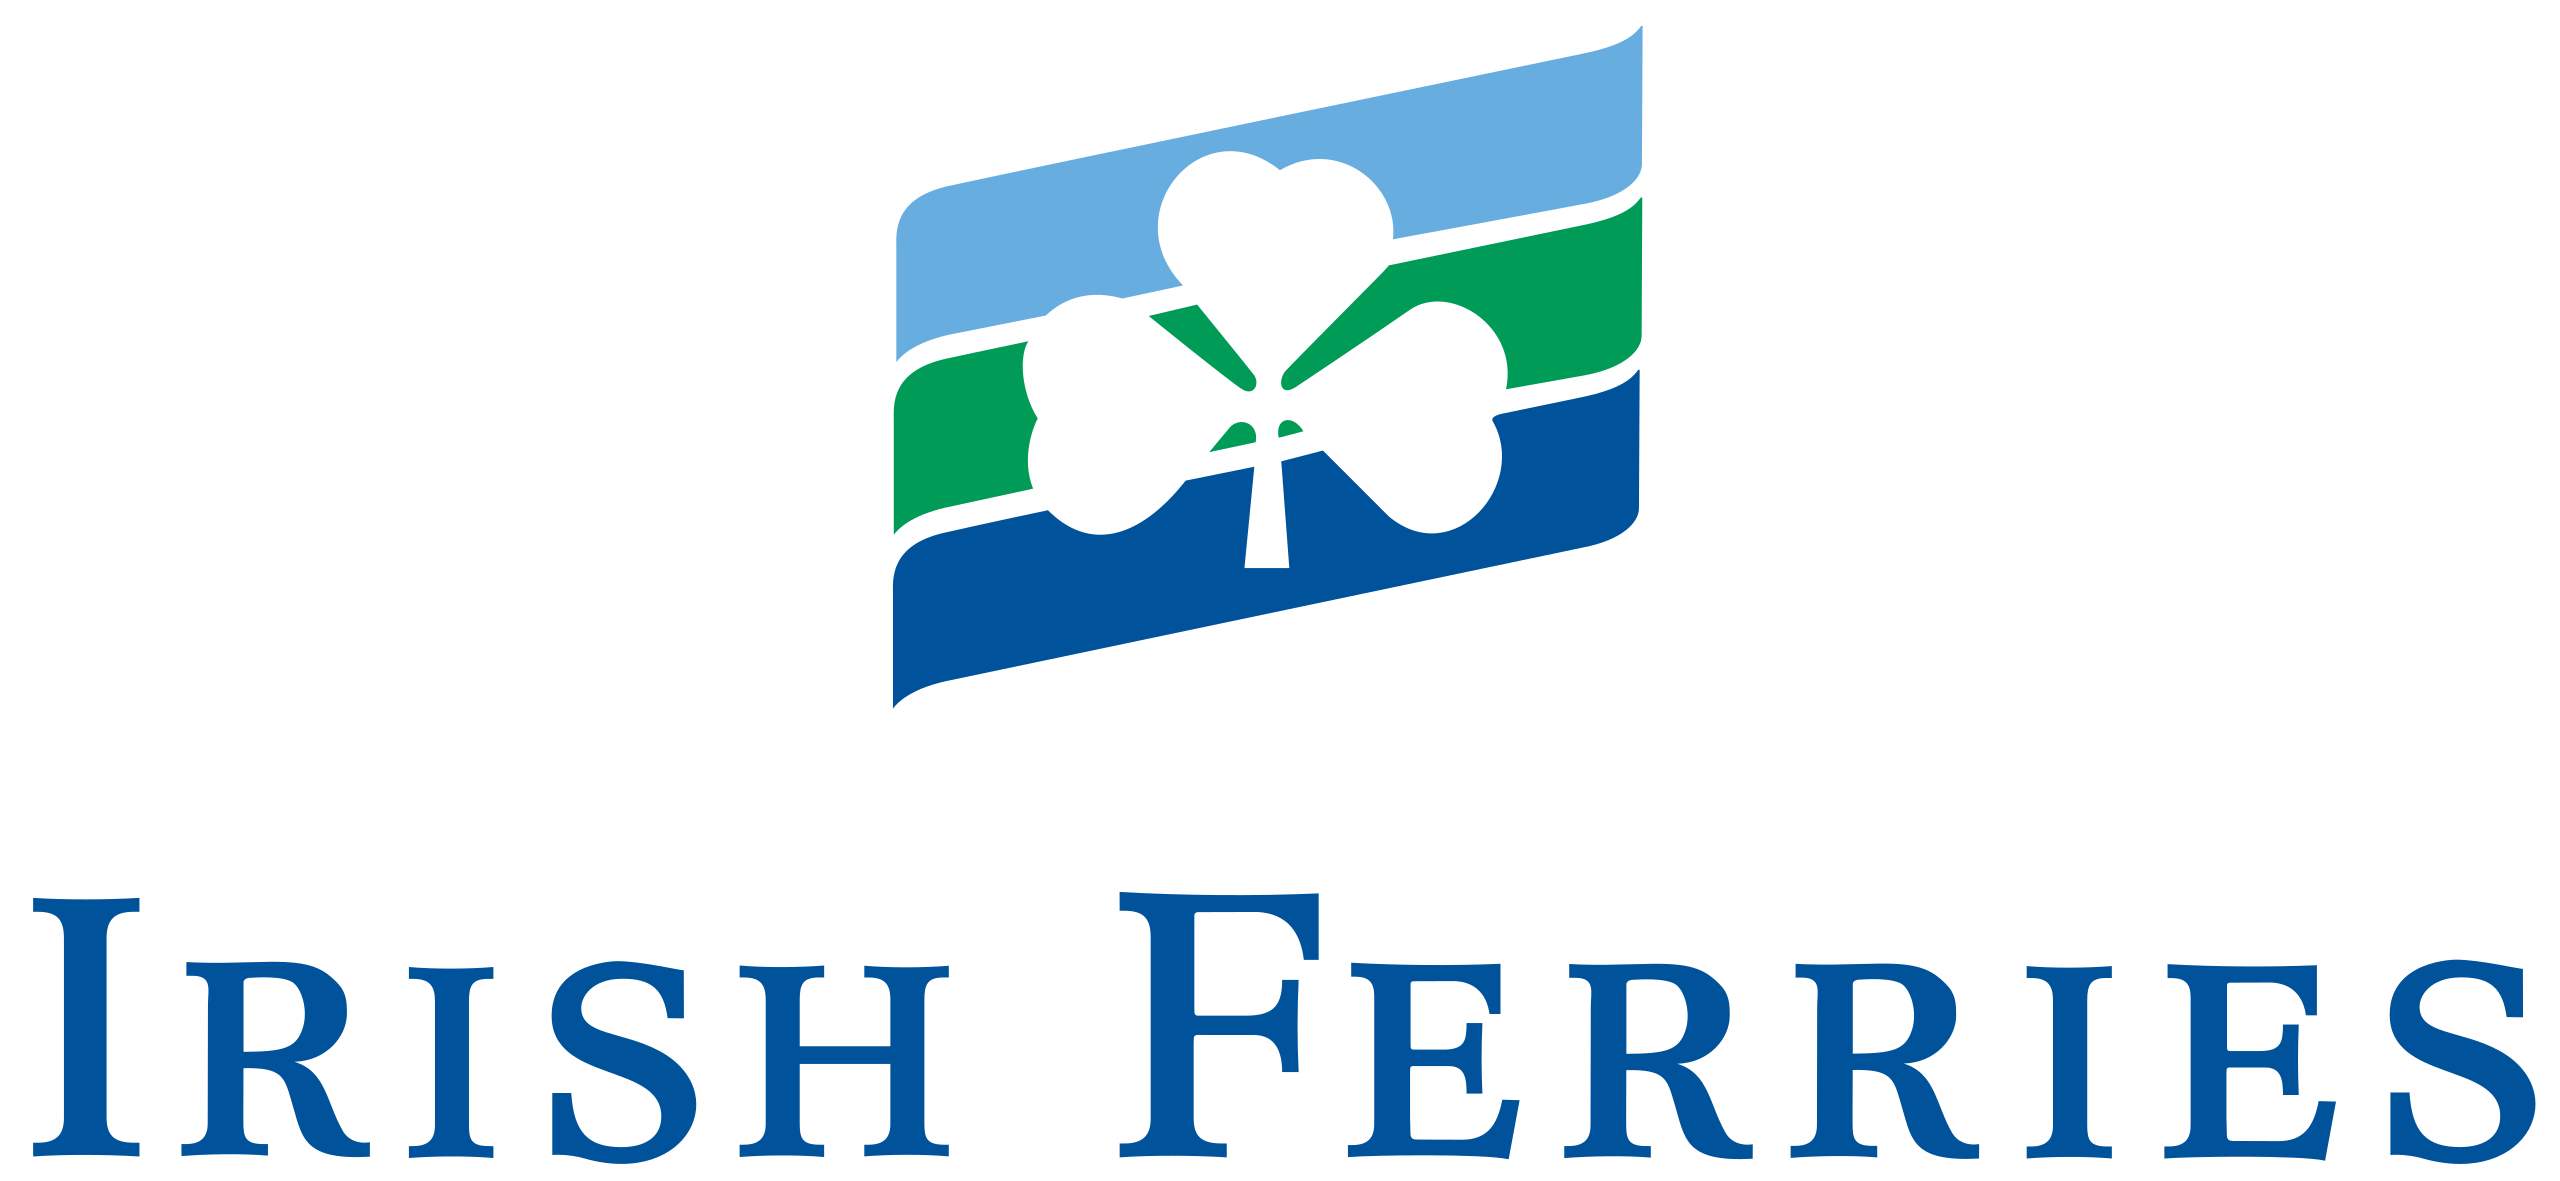 Code Promo Irish Ferries